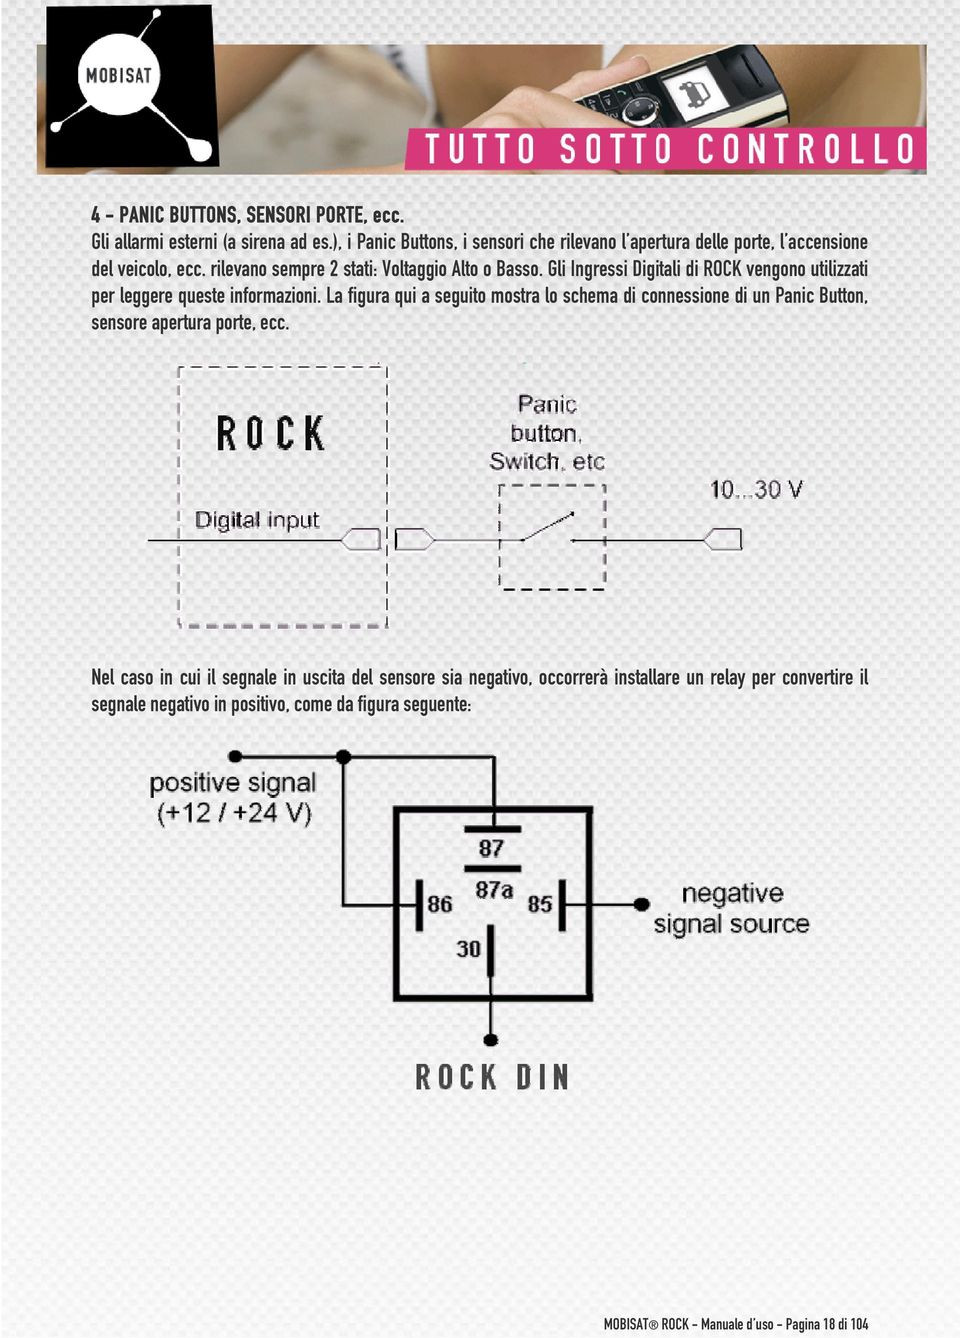 Gli Ingressi Digitali di ROCK vengono utilizzati per leggere queste informazioni.